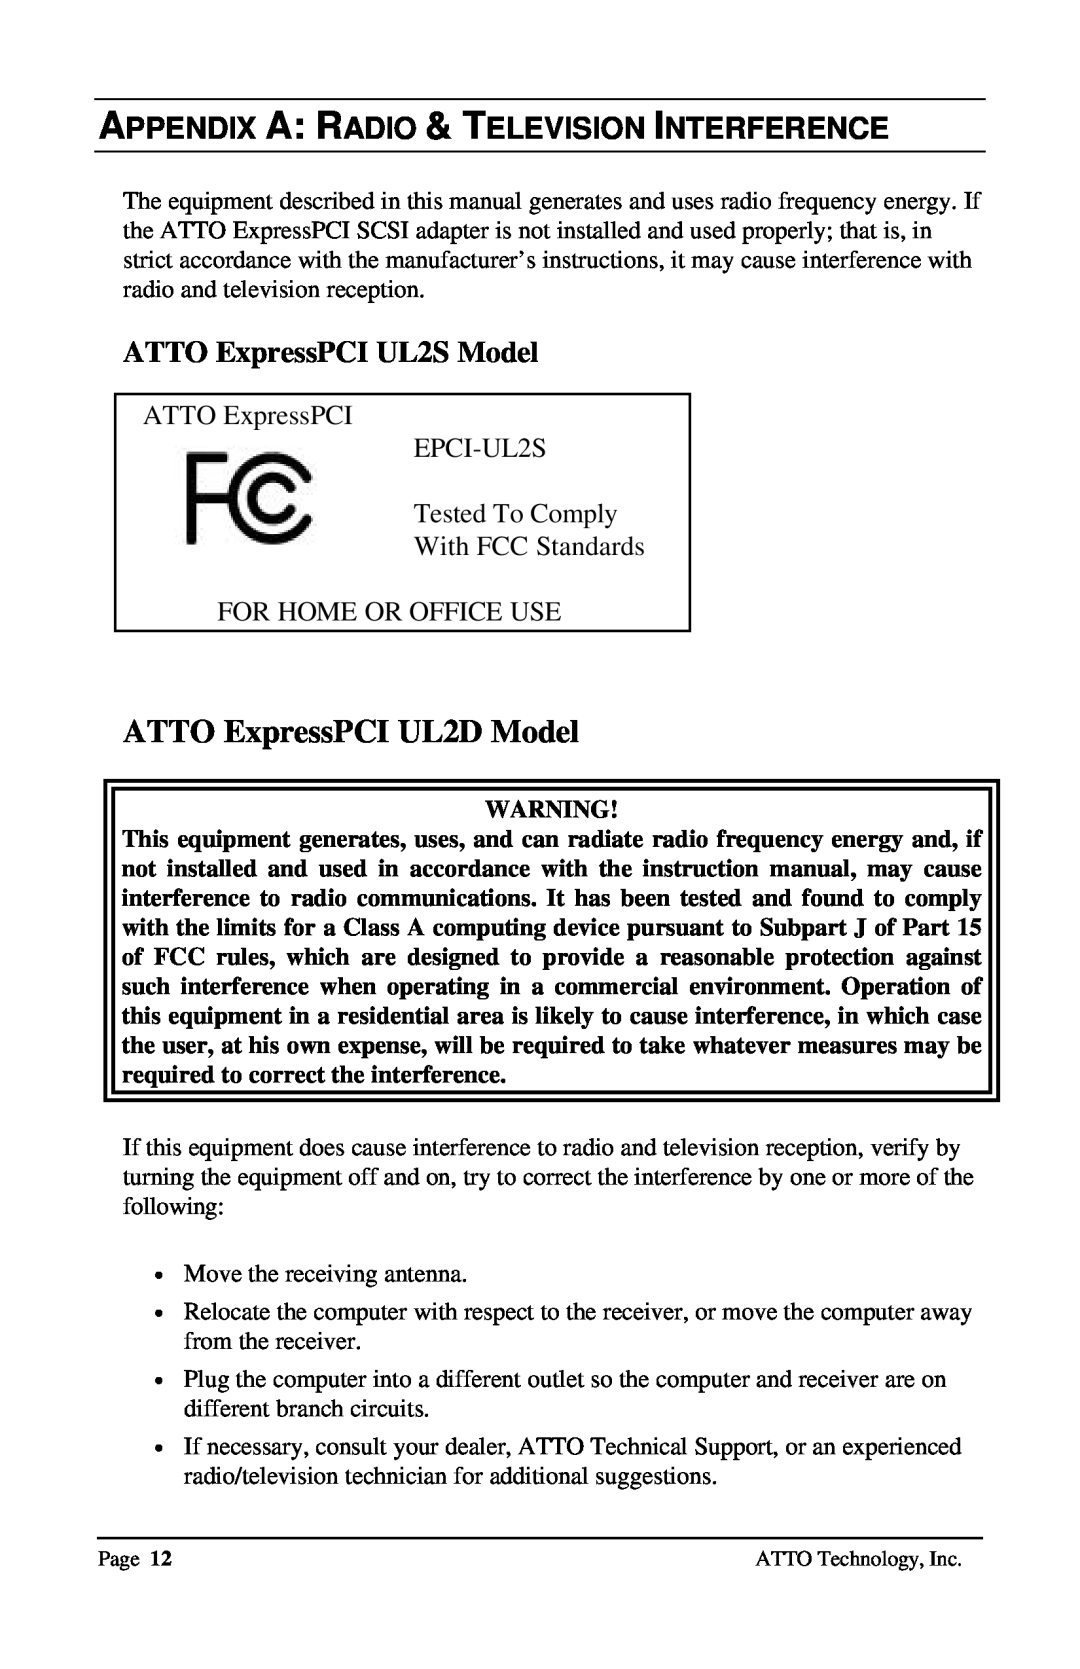 ATTO Technology Appendix A Radio & Television Interference, ATTO ExpressPCI UL2D Model, ATTO ExpressPCI UL2S Model 